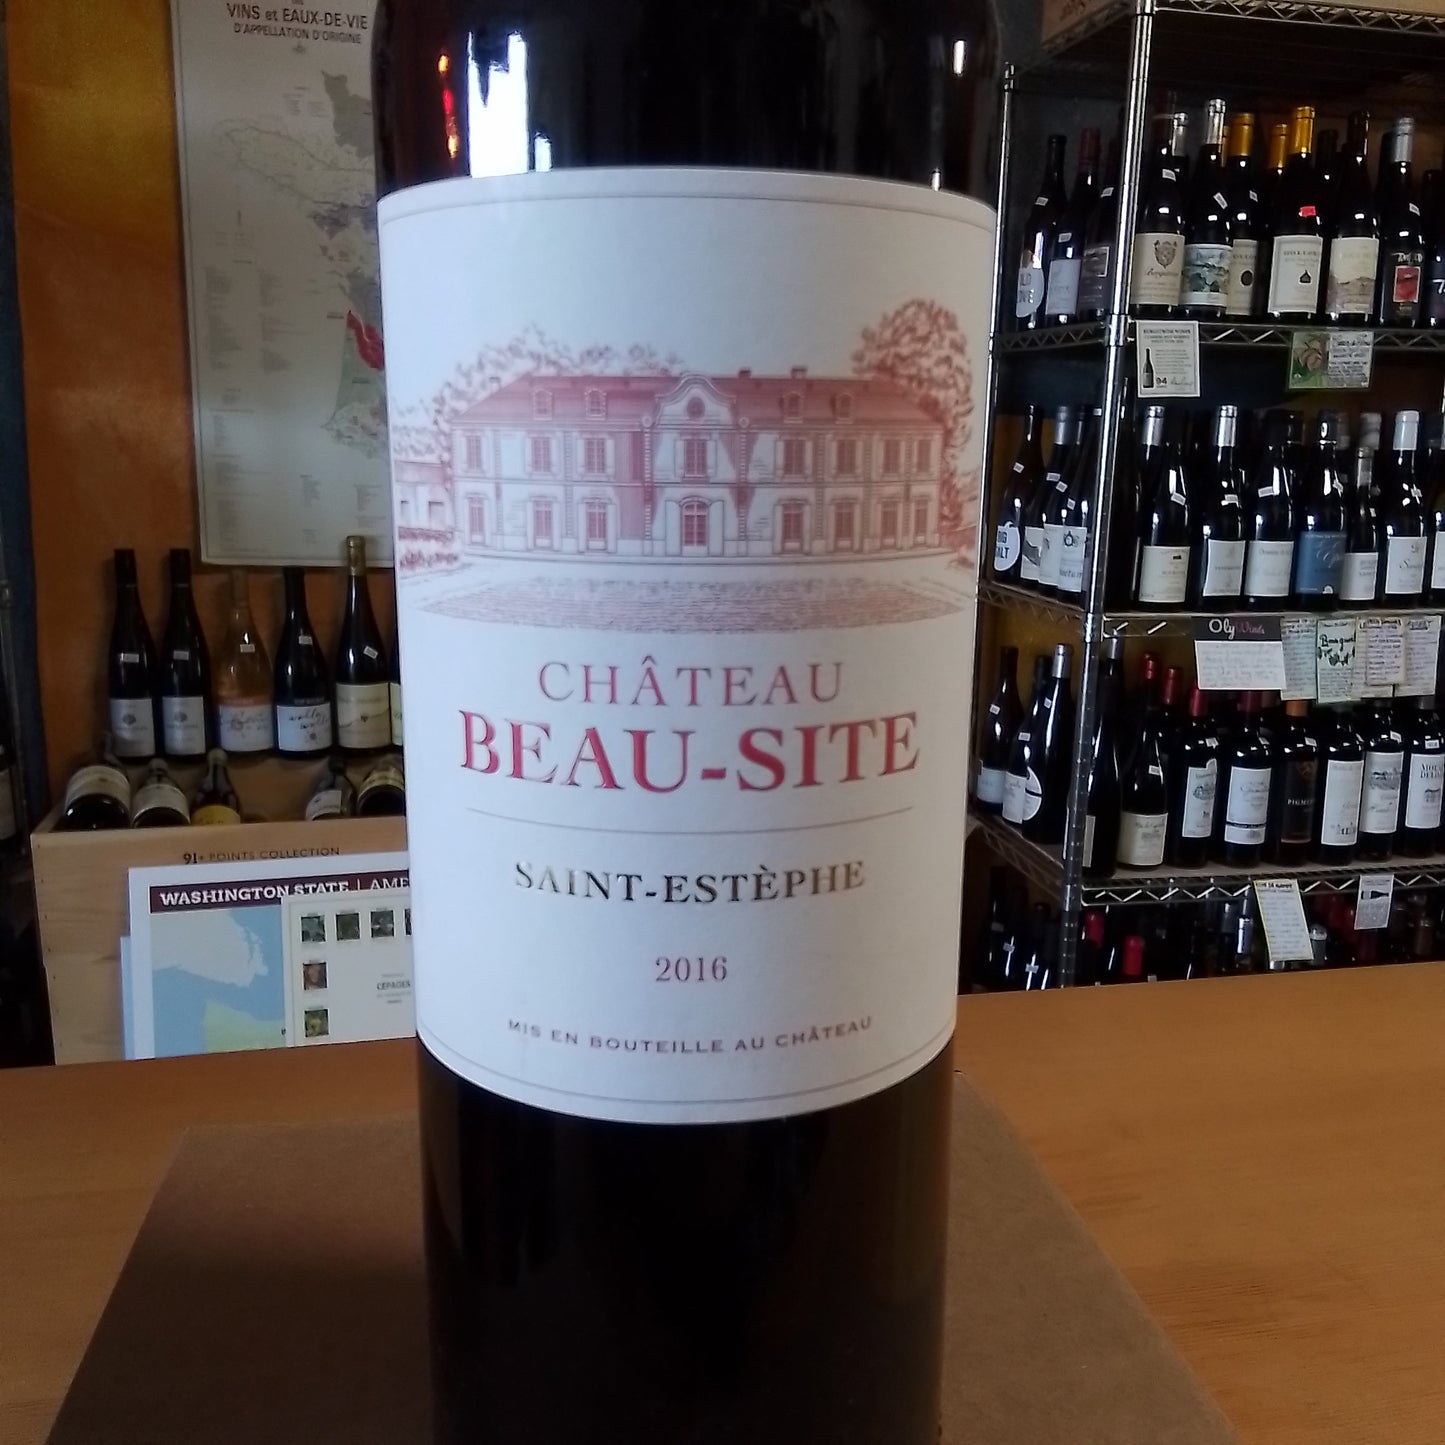 CHATEAU BEAU-SITE 2016 Bordeaux Red Blend (Bordeaux, France)